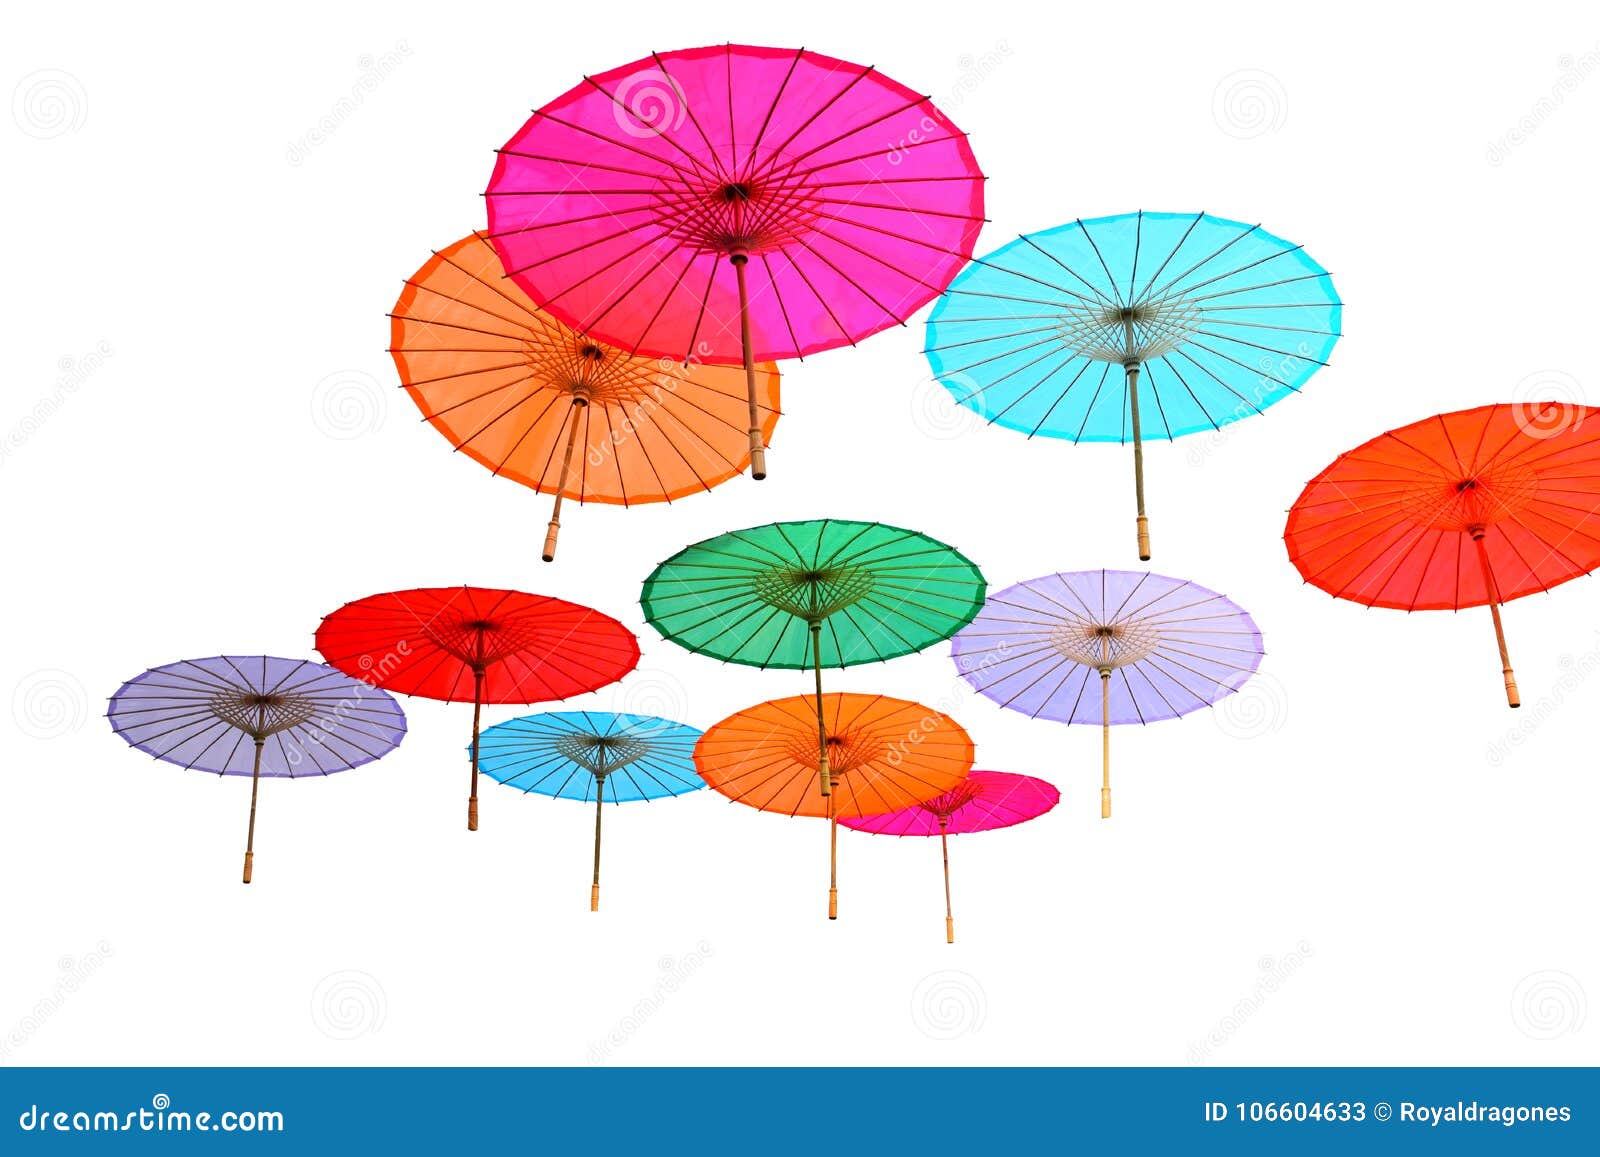 Het drijven Parasols - op wit wordt geïsoleerd dat. Multi-colored Chinese die parasols in lucht wordt opgeschort van onderaan